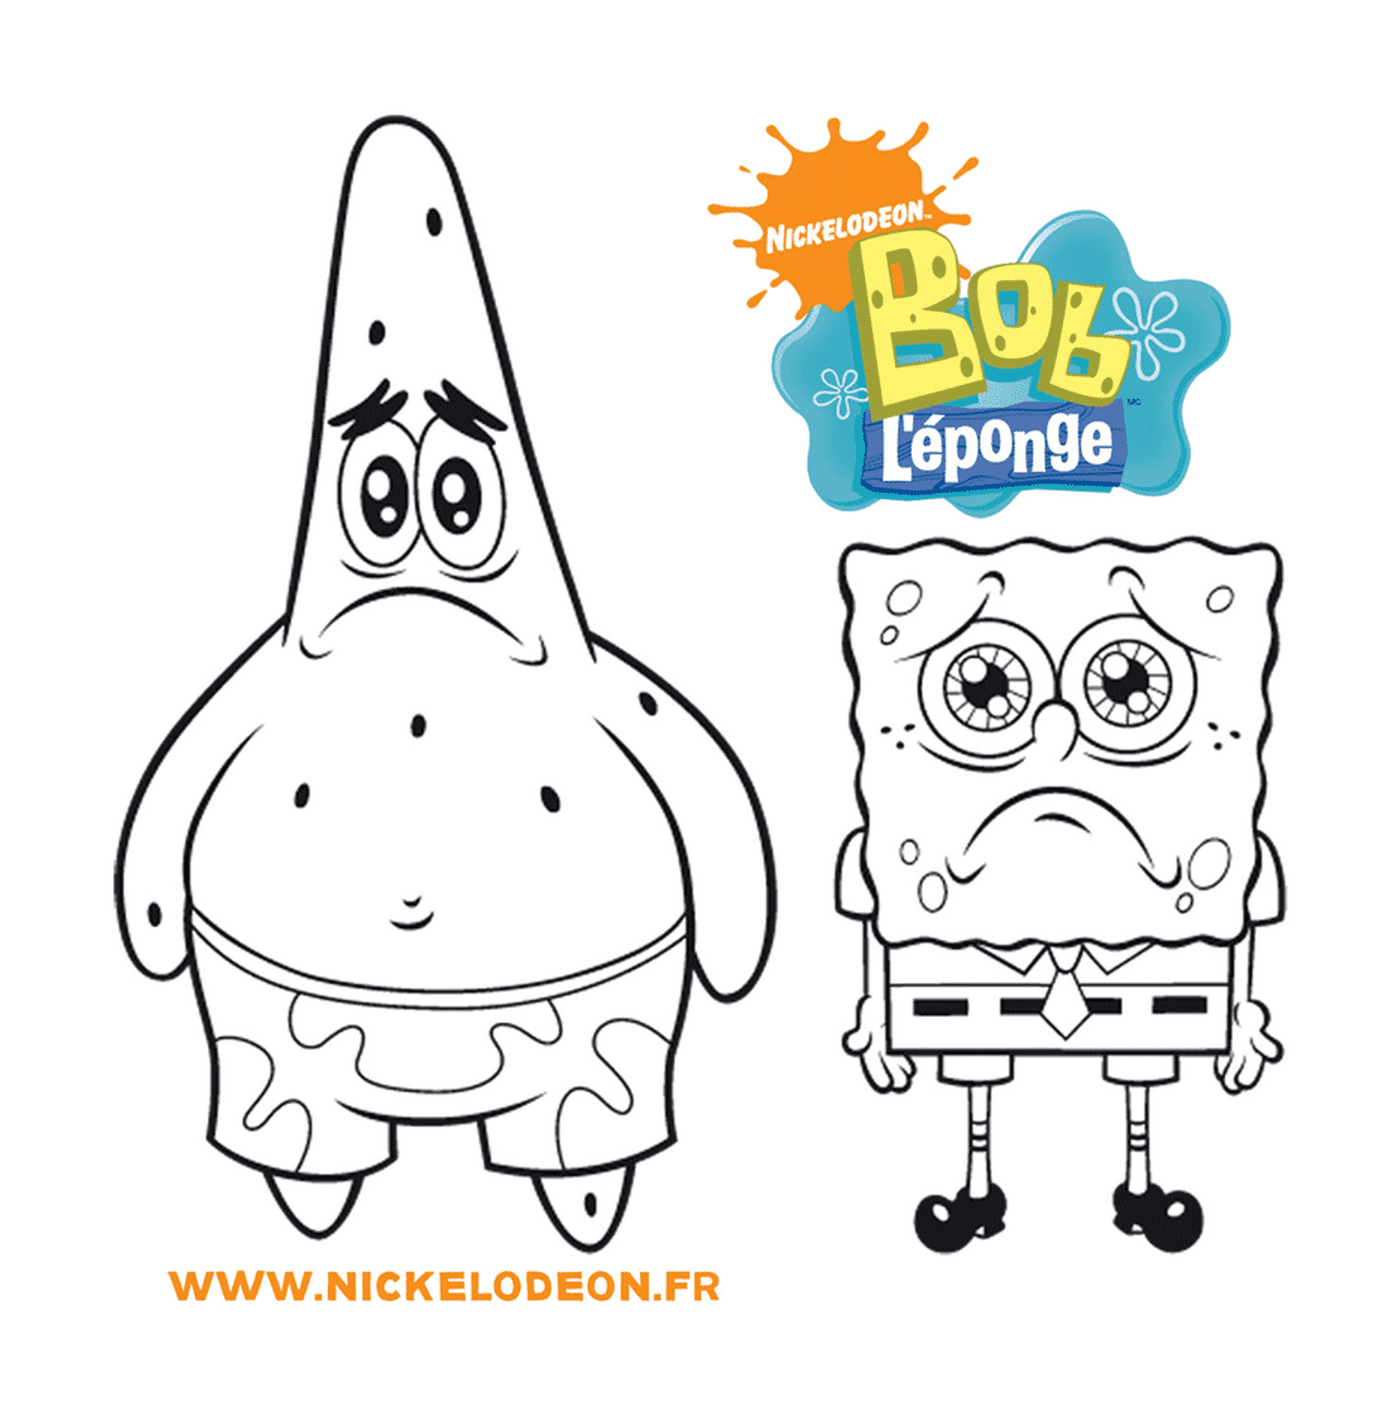  A Sponge Bob and the Sponge Bob logo 